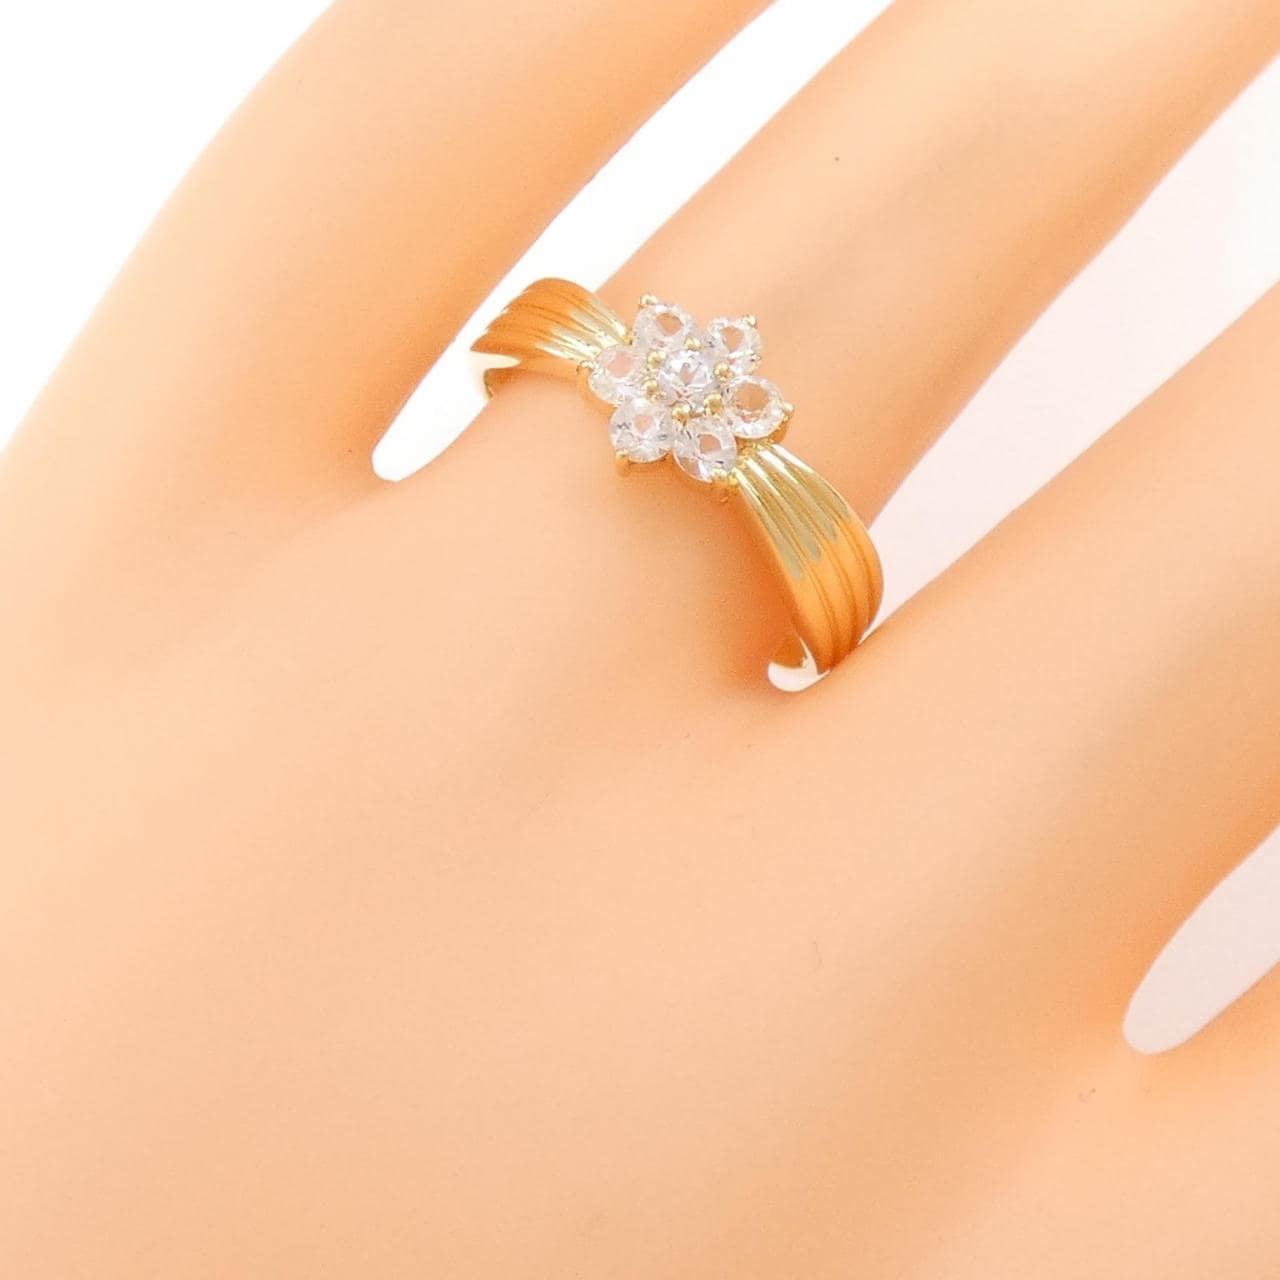 K18YG Flower White Sapphire Ring 0.30CT